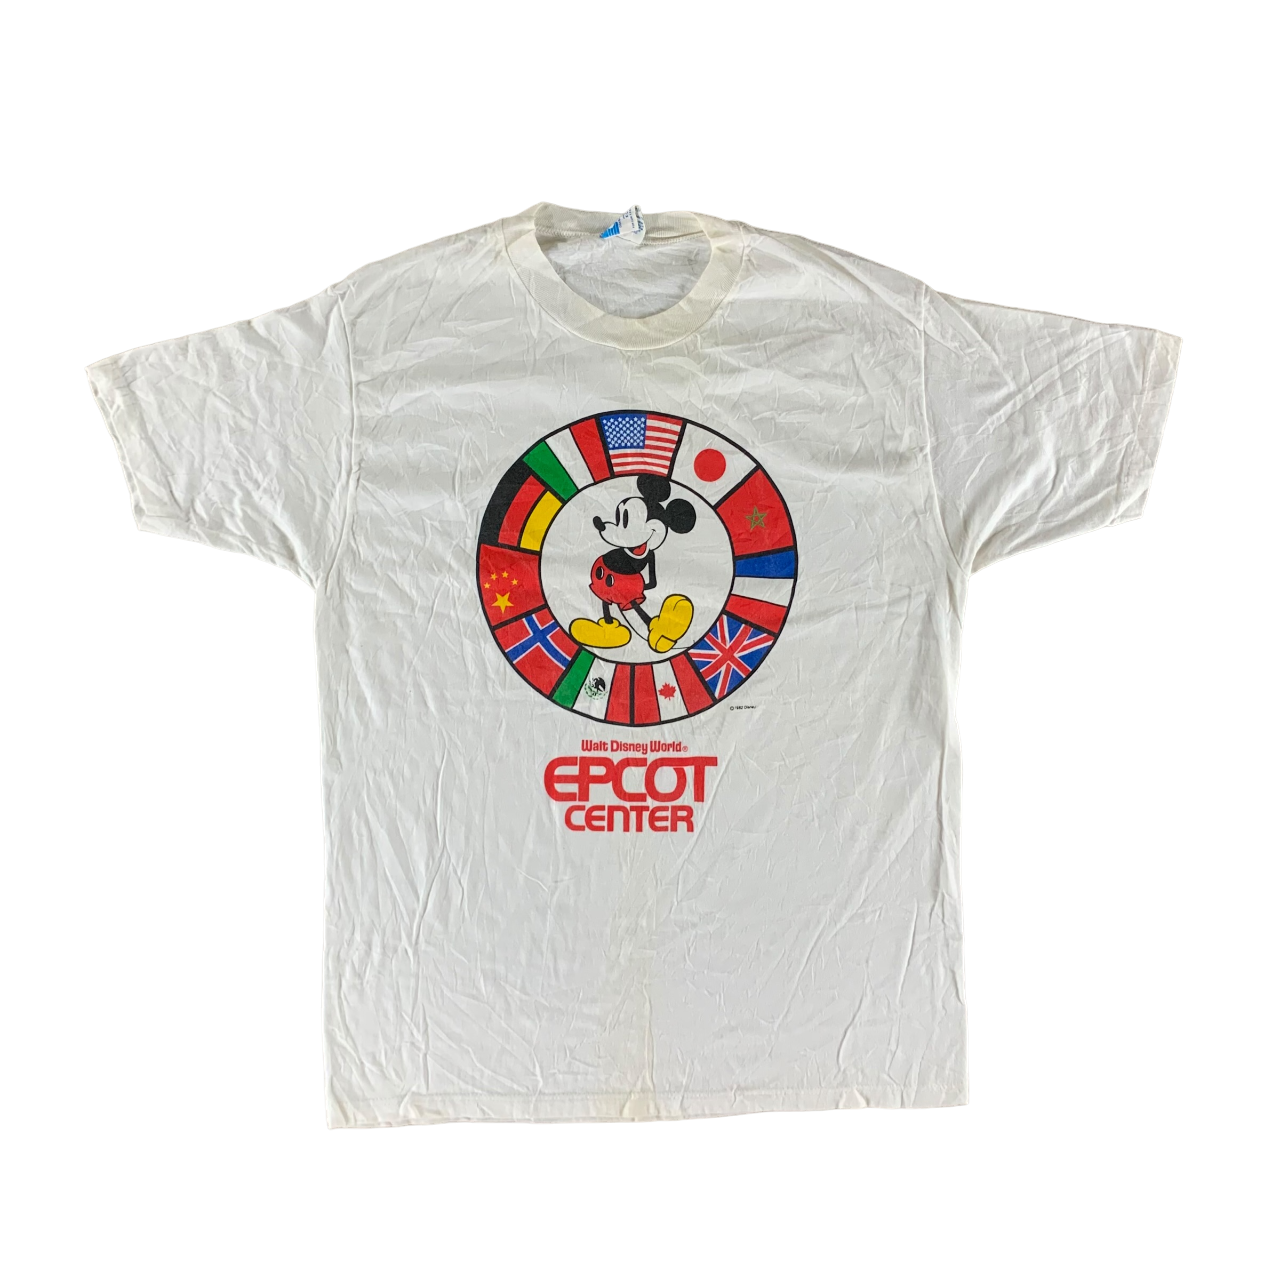 Vintage 1982 Disney T-shirt size XL